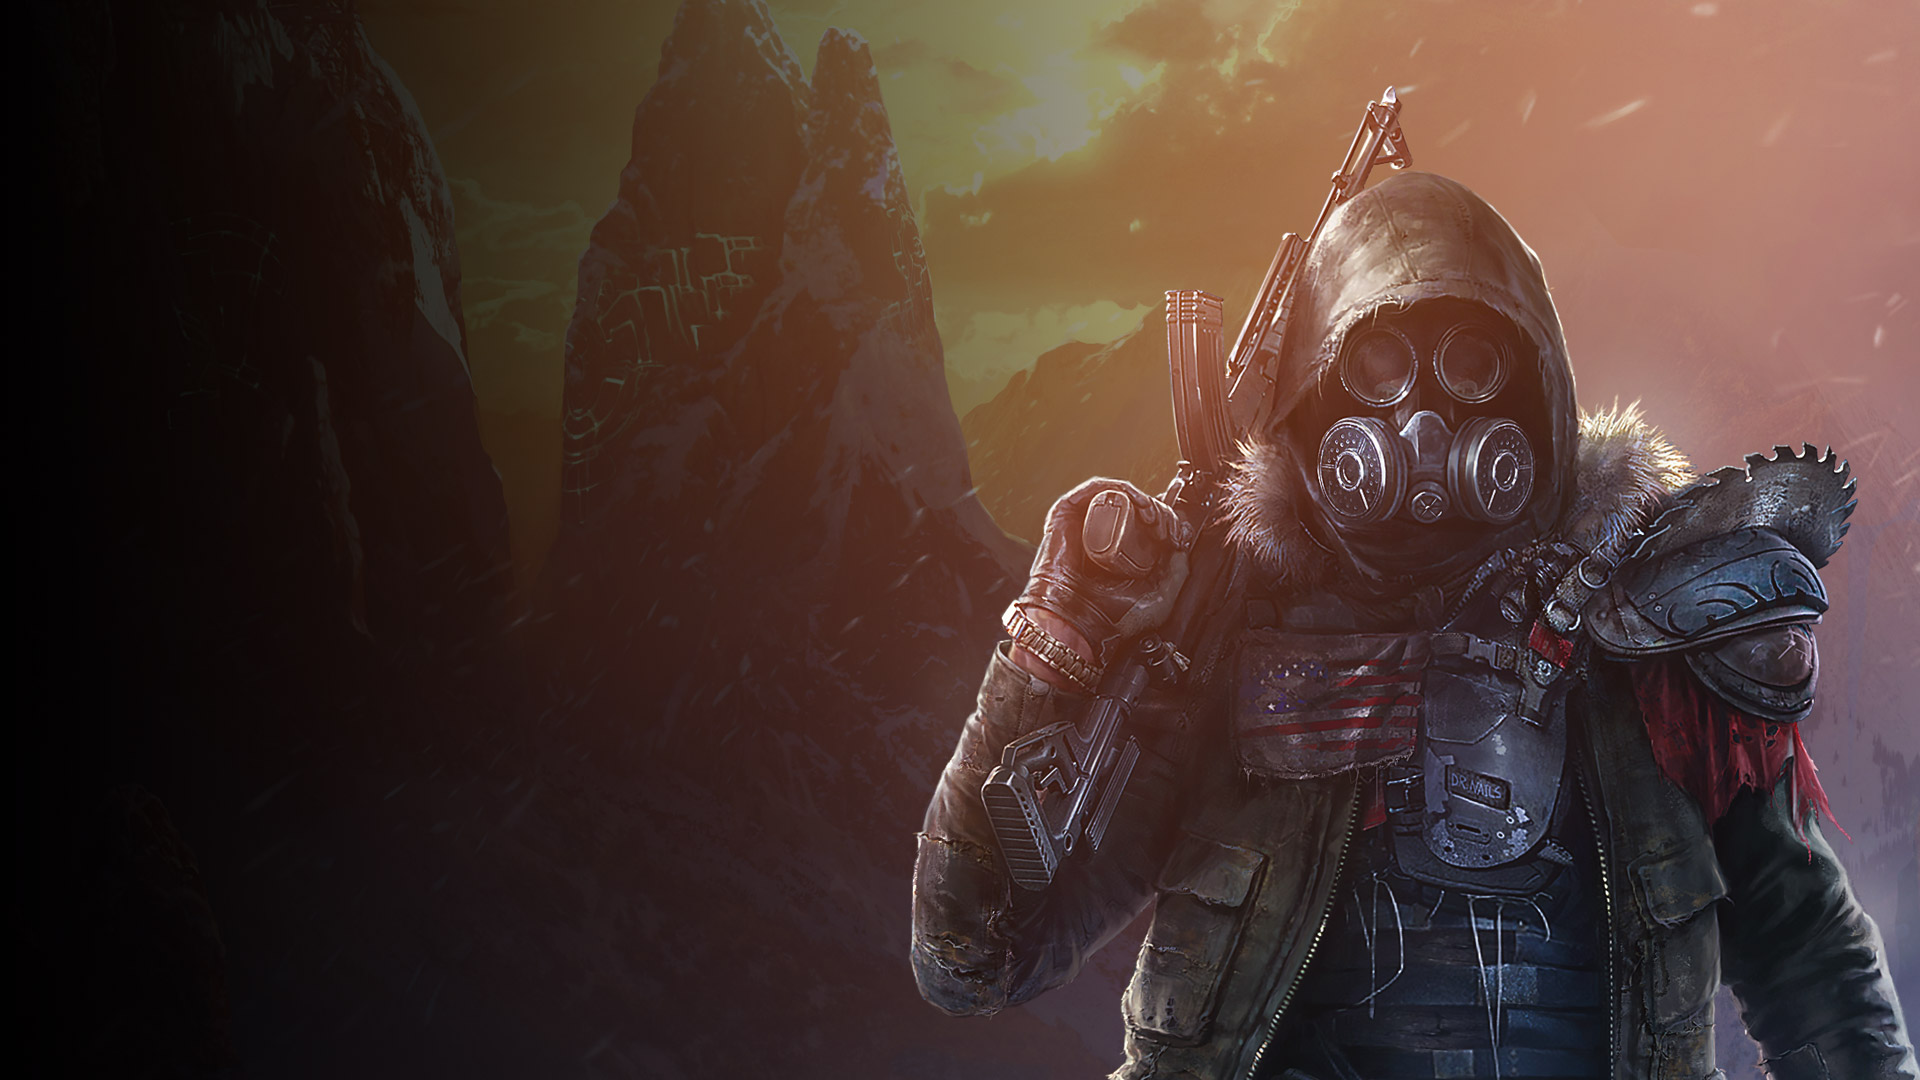 Postava v brnění ze hry Wasteland 3 s obličejovou maskou a zbraní v ruce